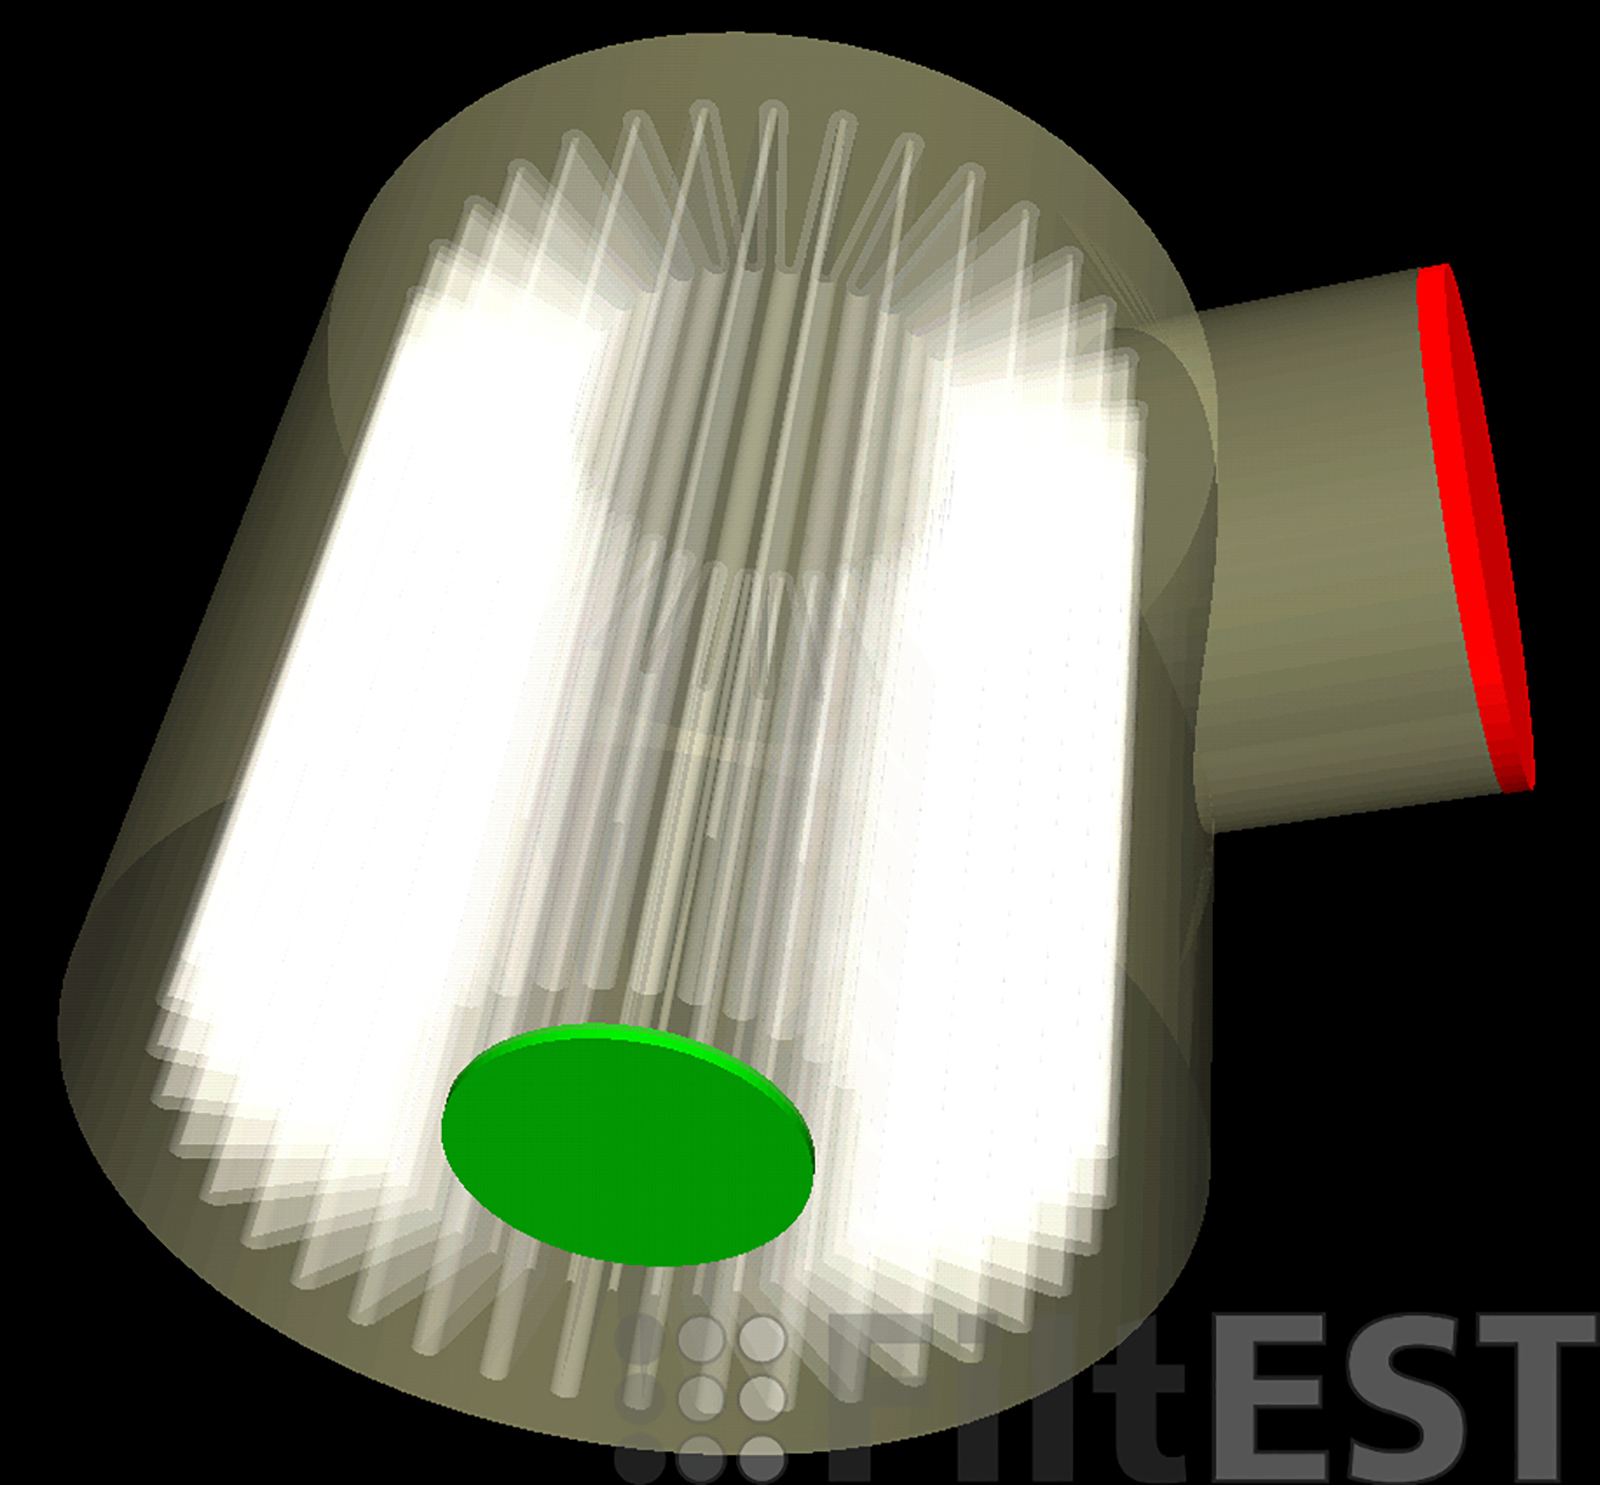 Zylindrisches Gehäuse mit gefaltetem Filtermedium (Sternfilter), seitlichem Einlassbereich (rot) und zentralem Auslass (grün).